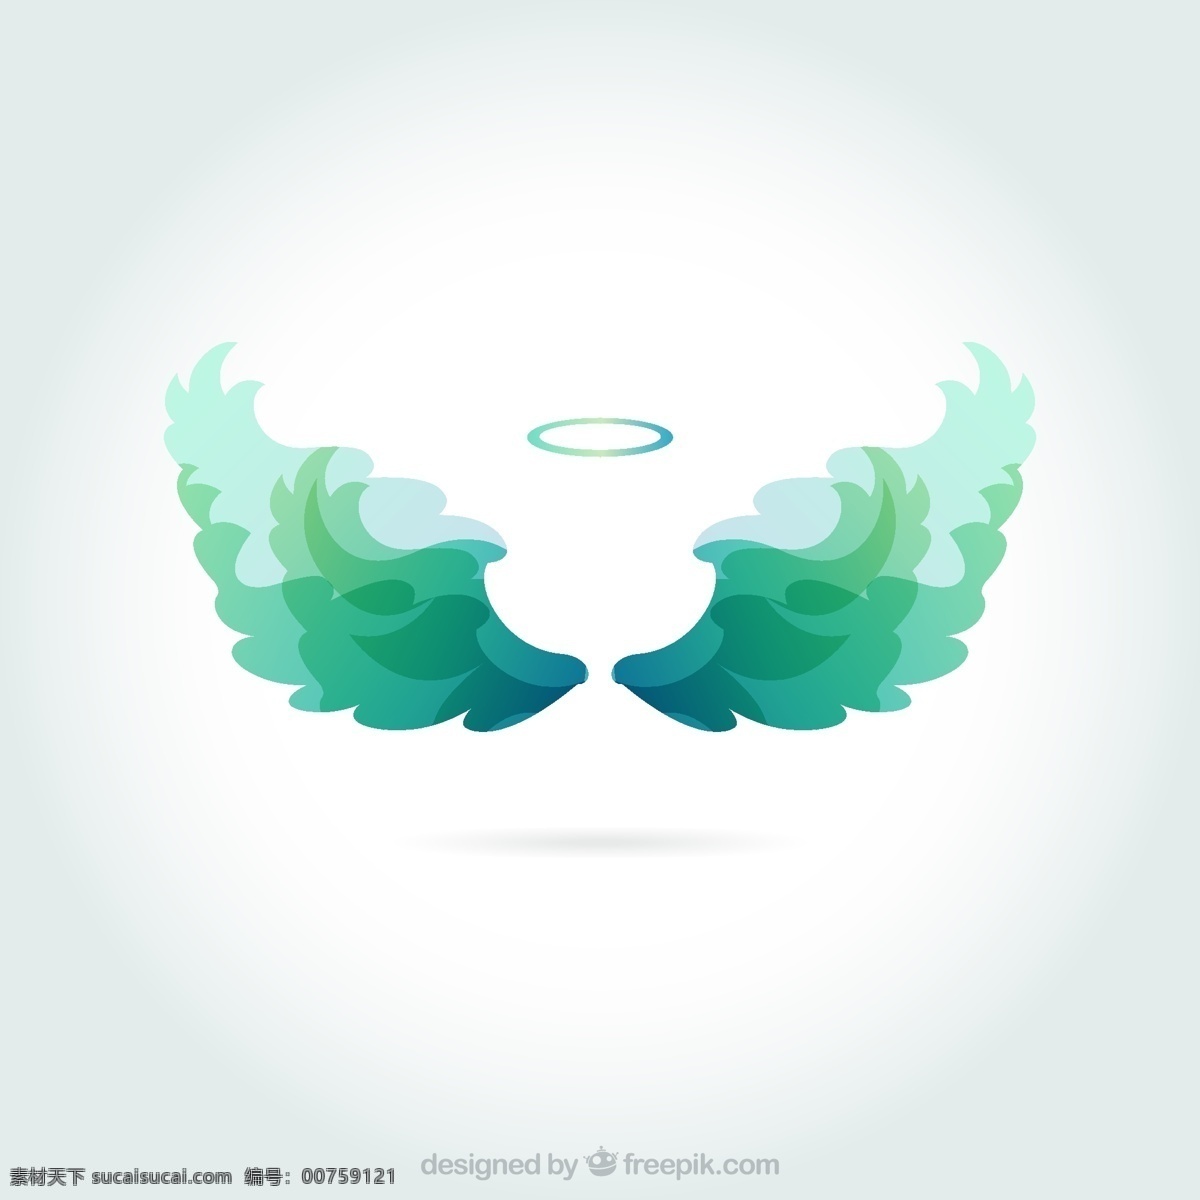 绿色 天使 光环 翅膀 矢量图 插画 背景 海报 画册